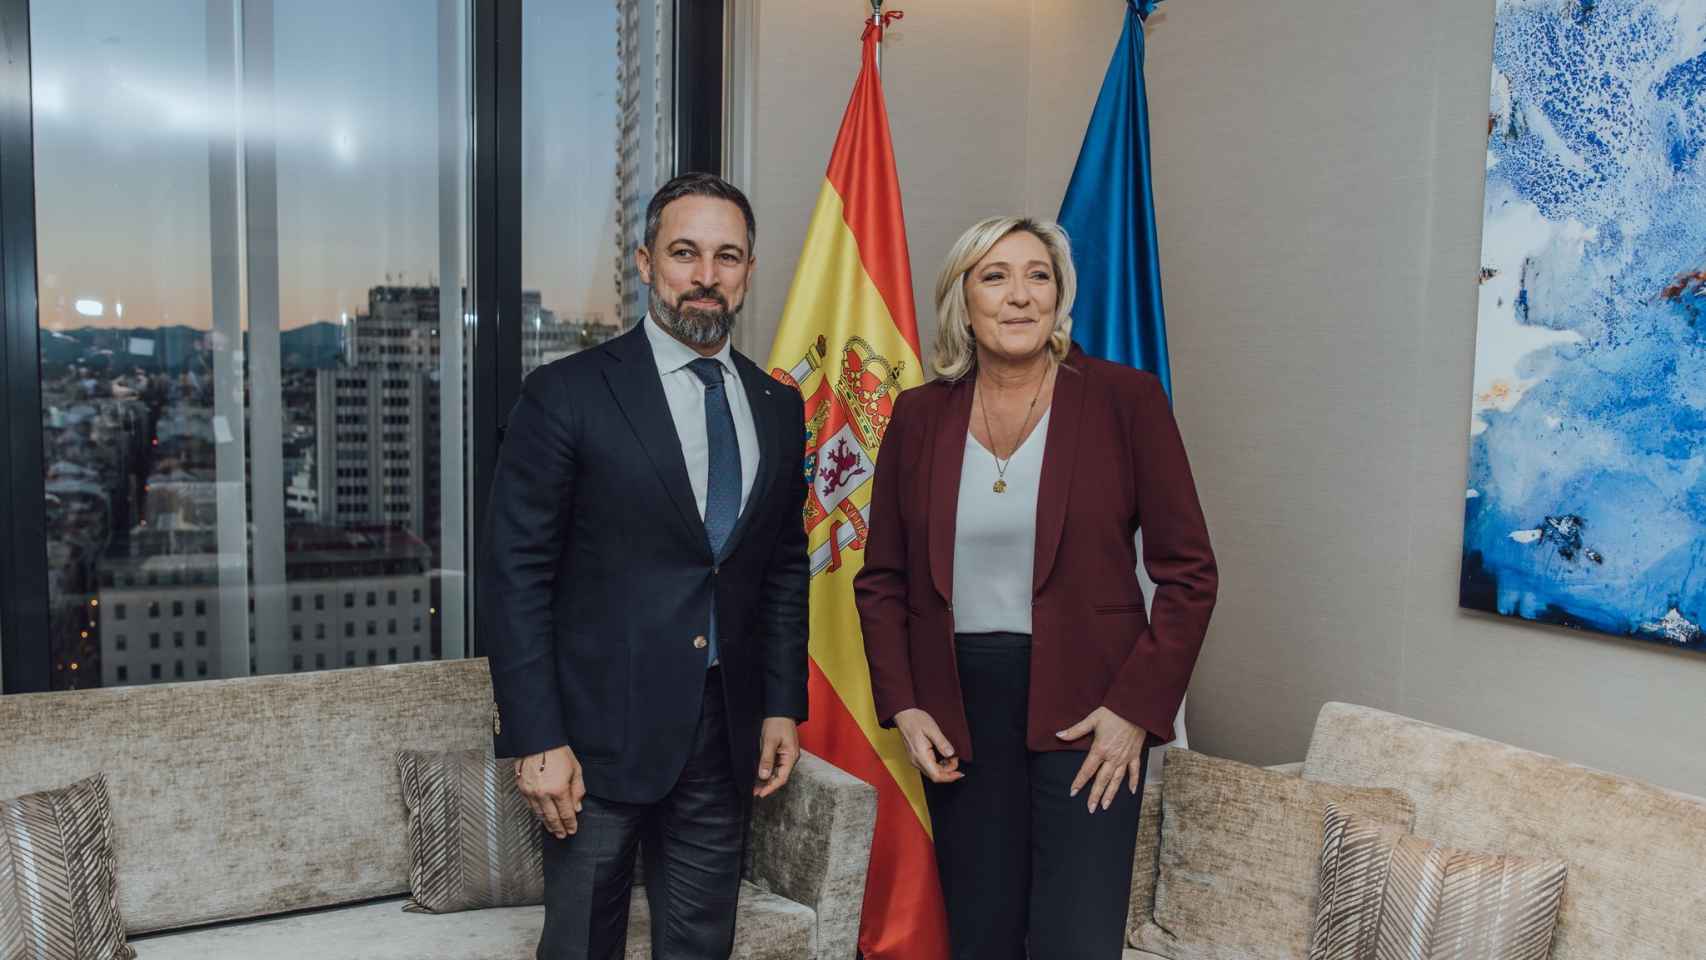 Santiago Abascal (Vox, España) saluda a Marine Le Pen (Reagrupamiento Nacional, Francia).